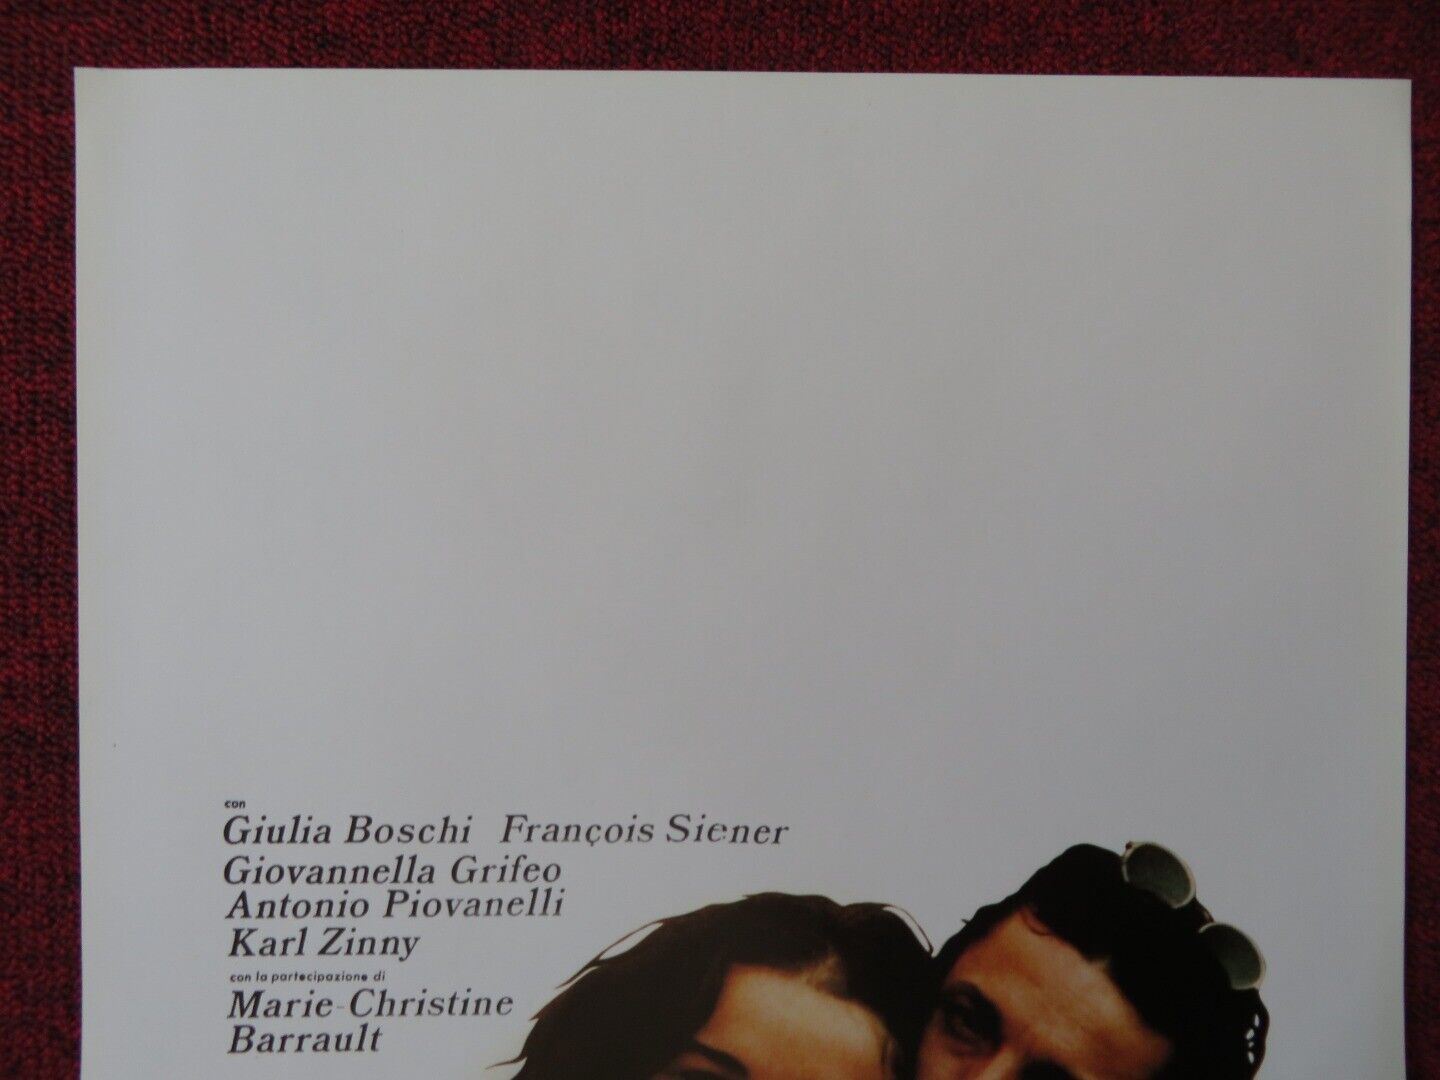 PIANOFORTE  ITALIAN LOCANDINA (27.5"x13") POSTER FRANCESCA COMENCINI 1984